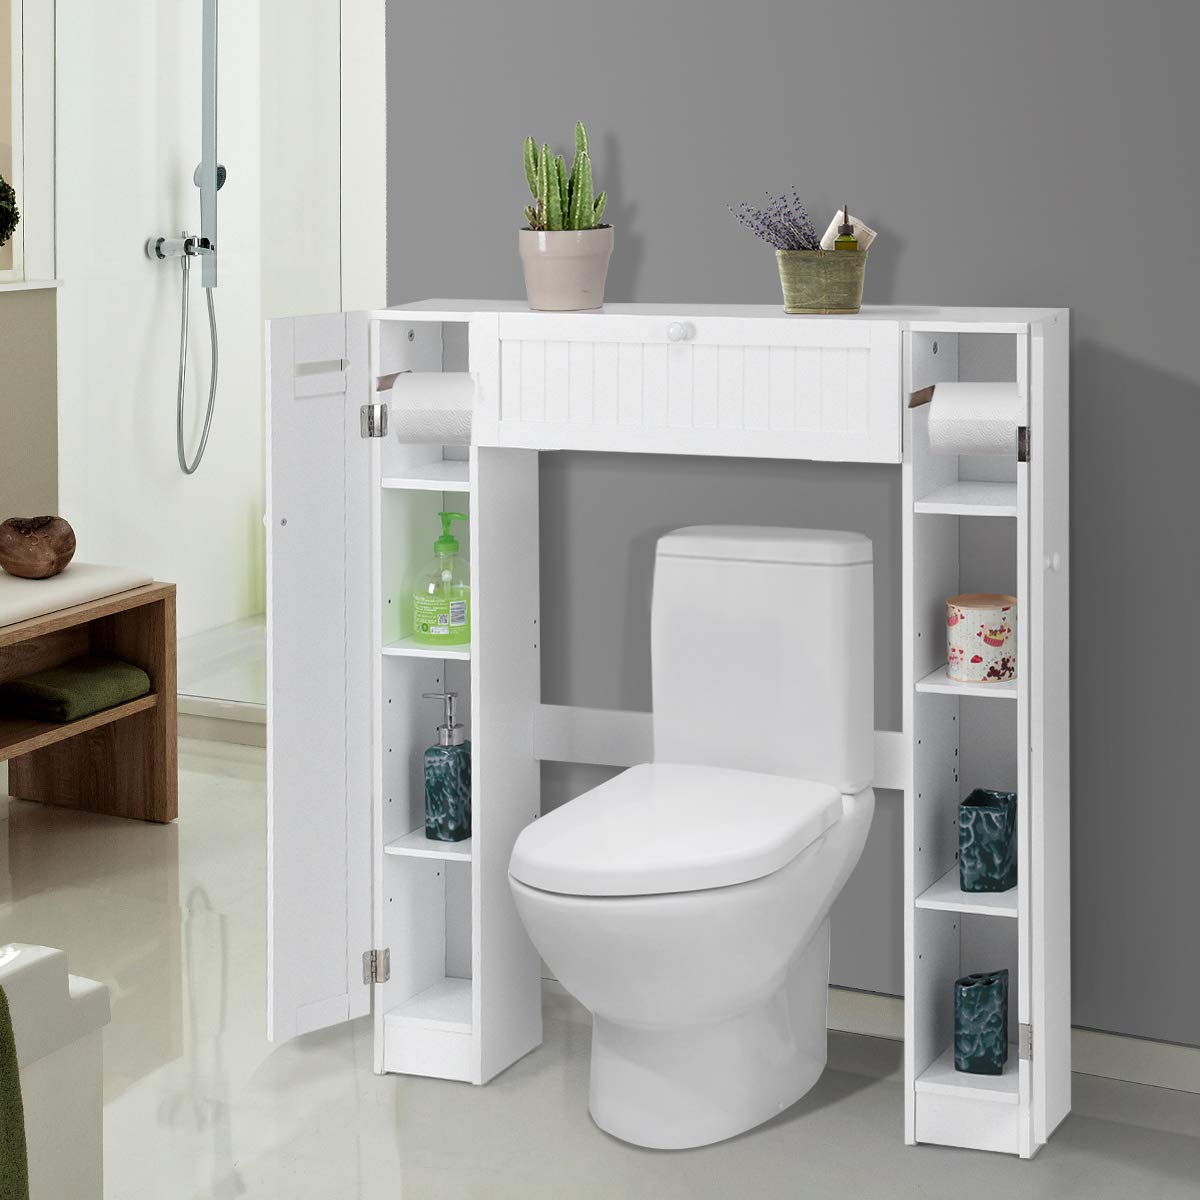 Over-The-Toilet Rack Bathroom Shelf Storage Cabinet Wooden Drop Door Freestanding Spacesaver Improvements, White